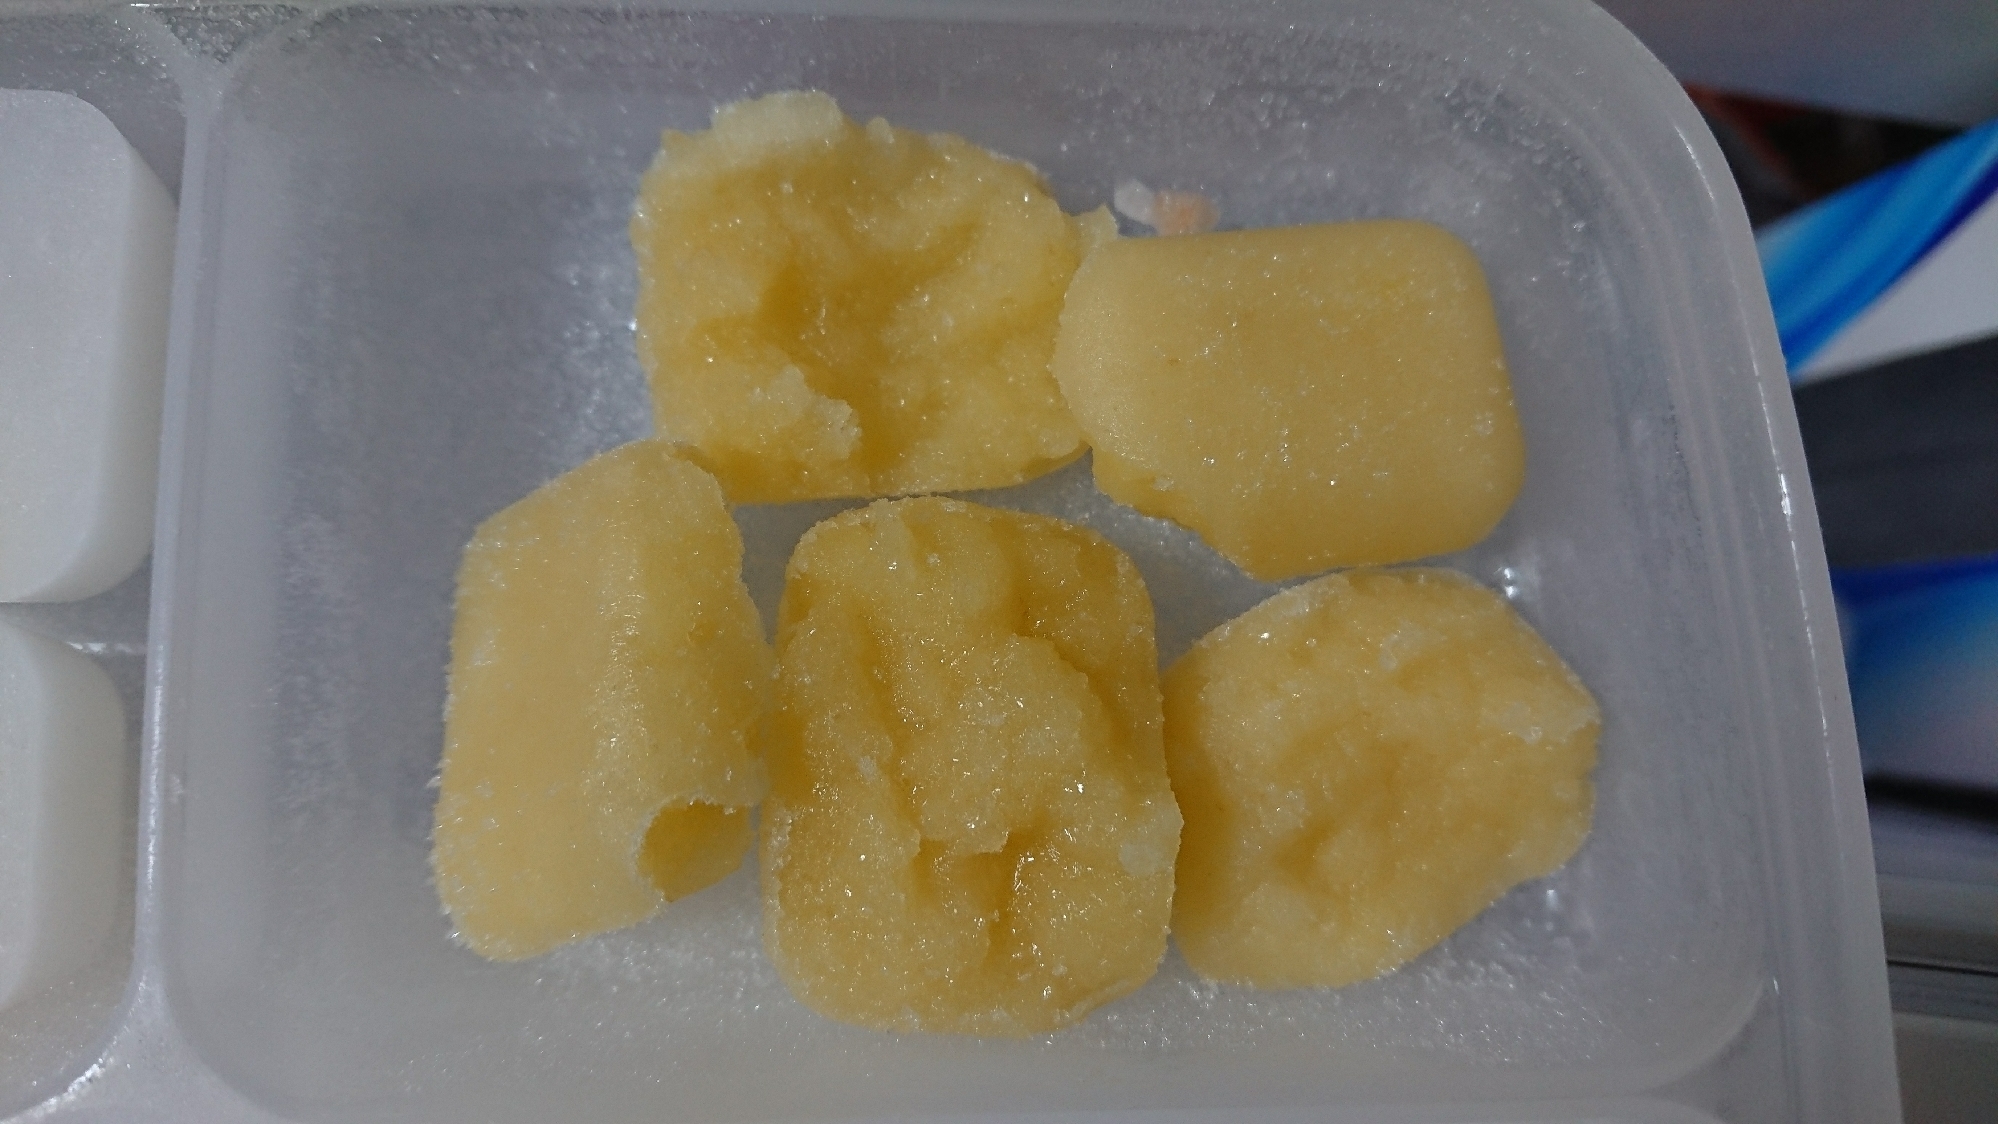 りんご 離乳食初期 冷凍方法